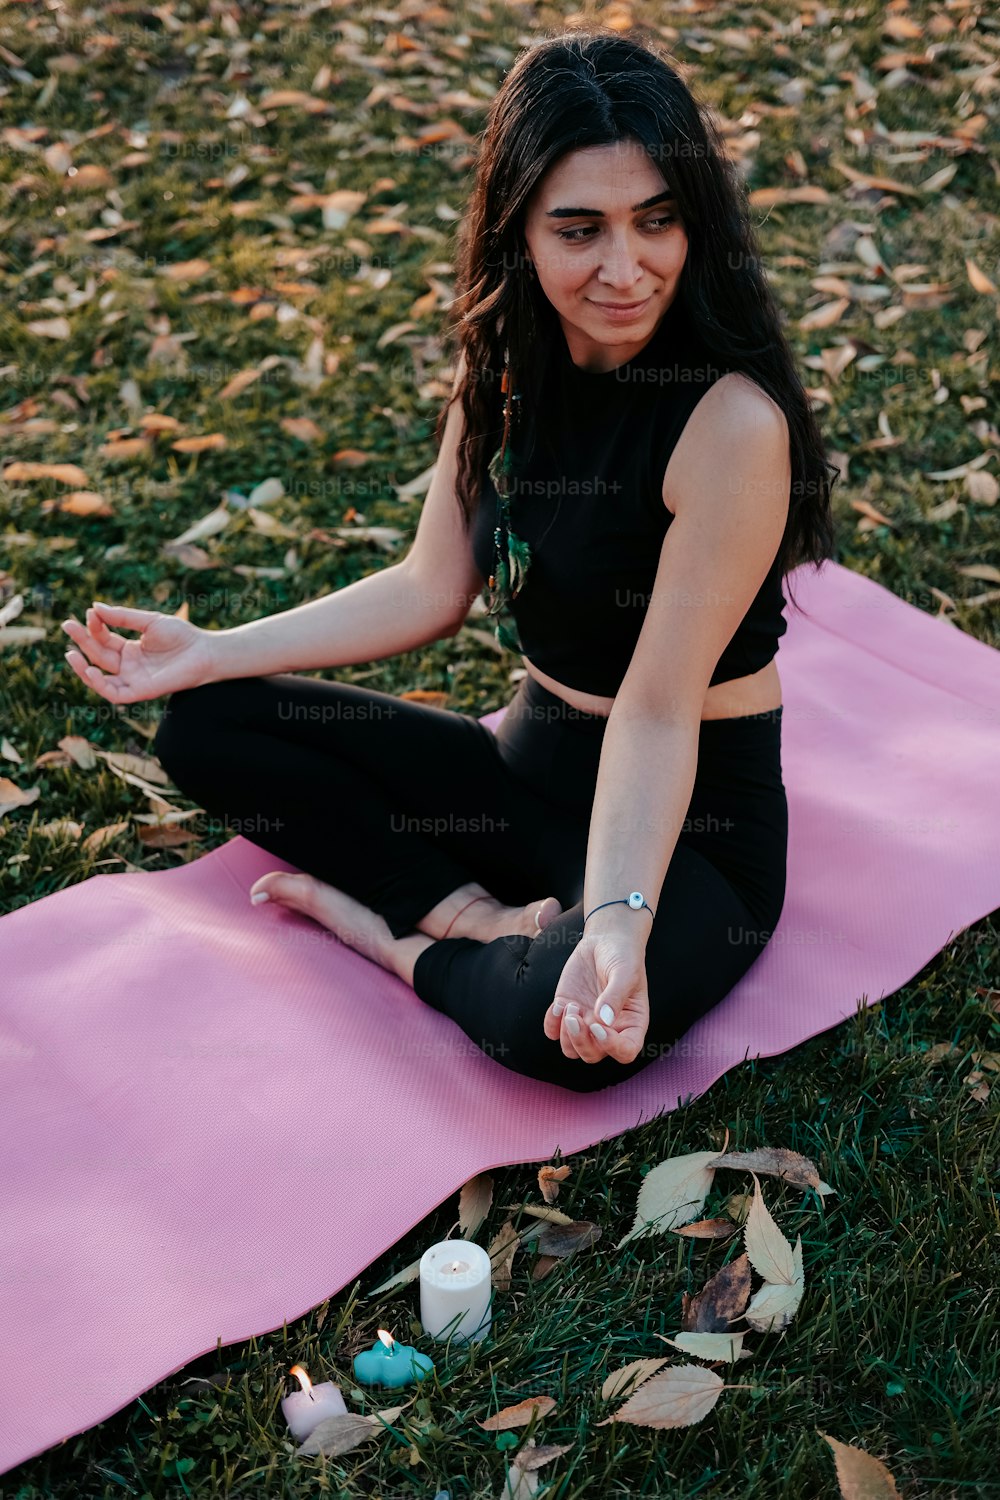 Una donna seduta su un tappetino da yoga in un parco